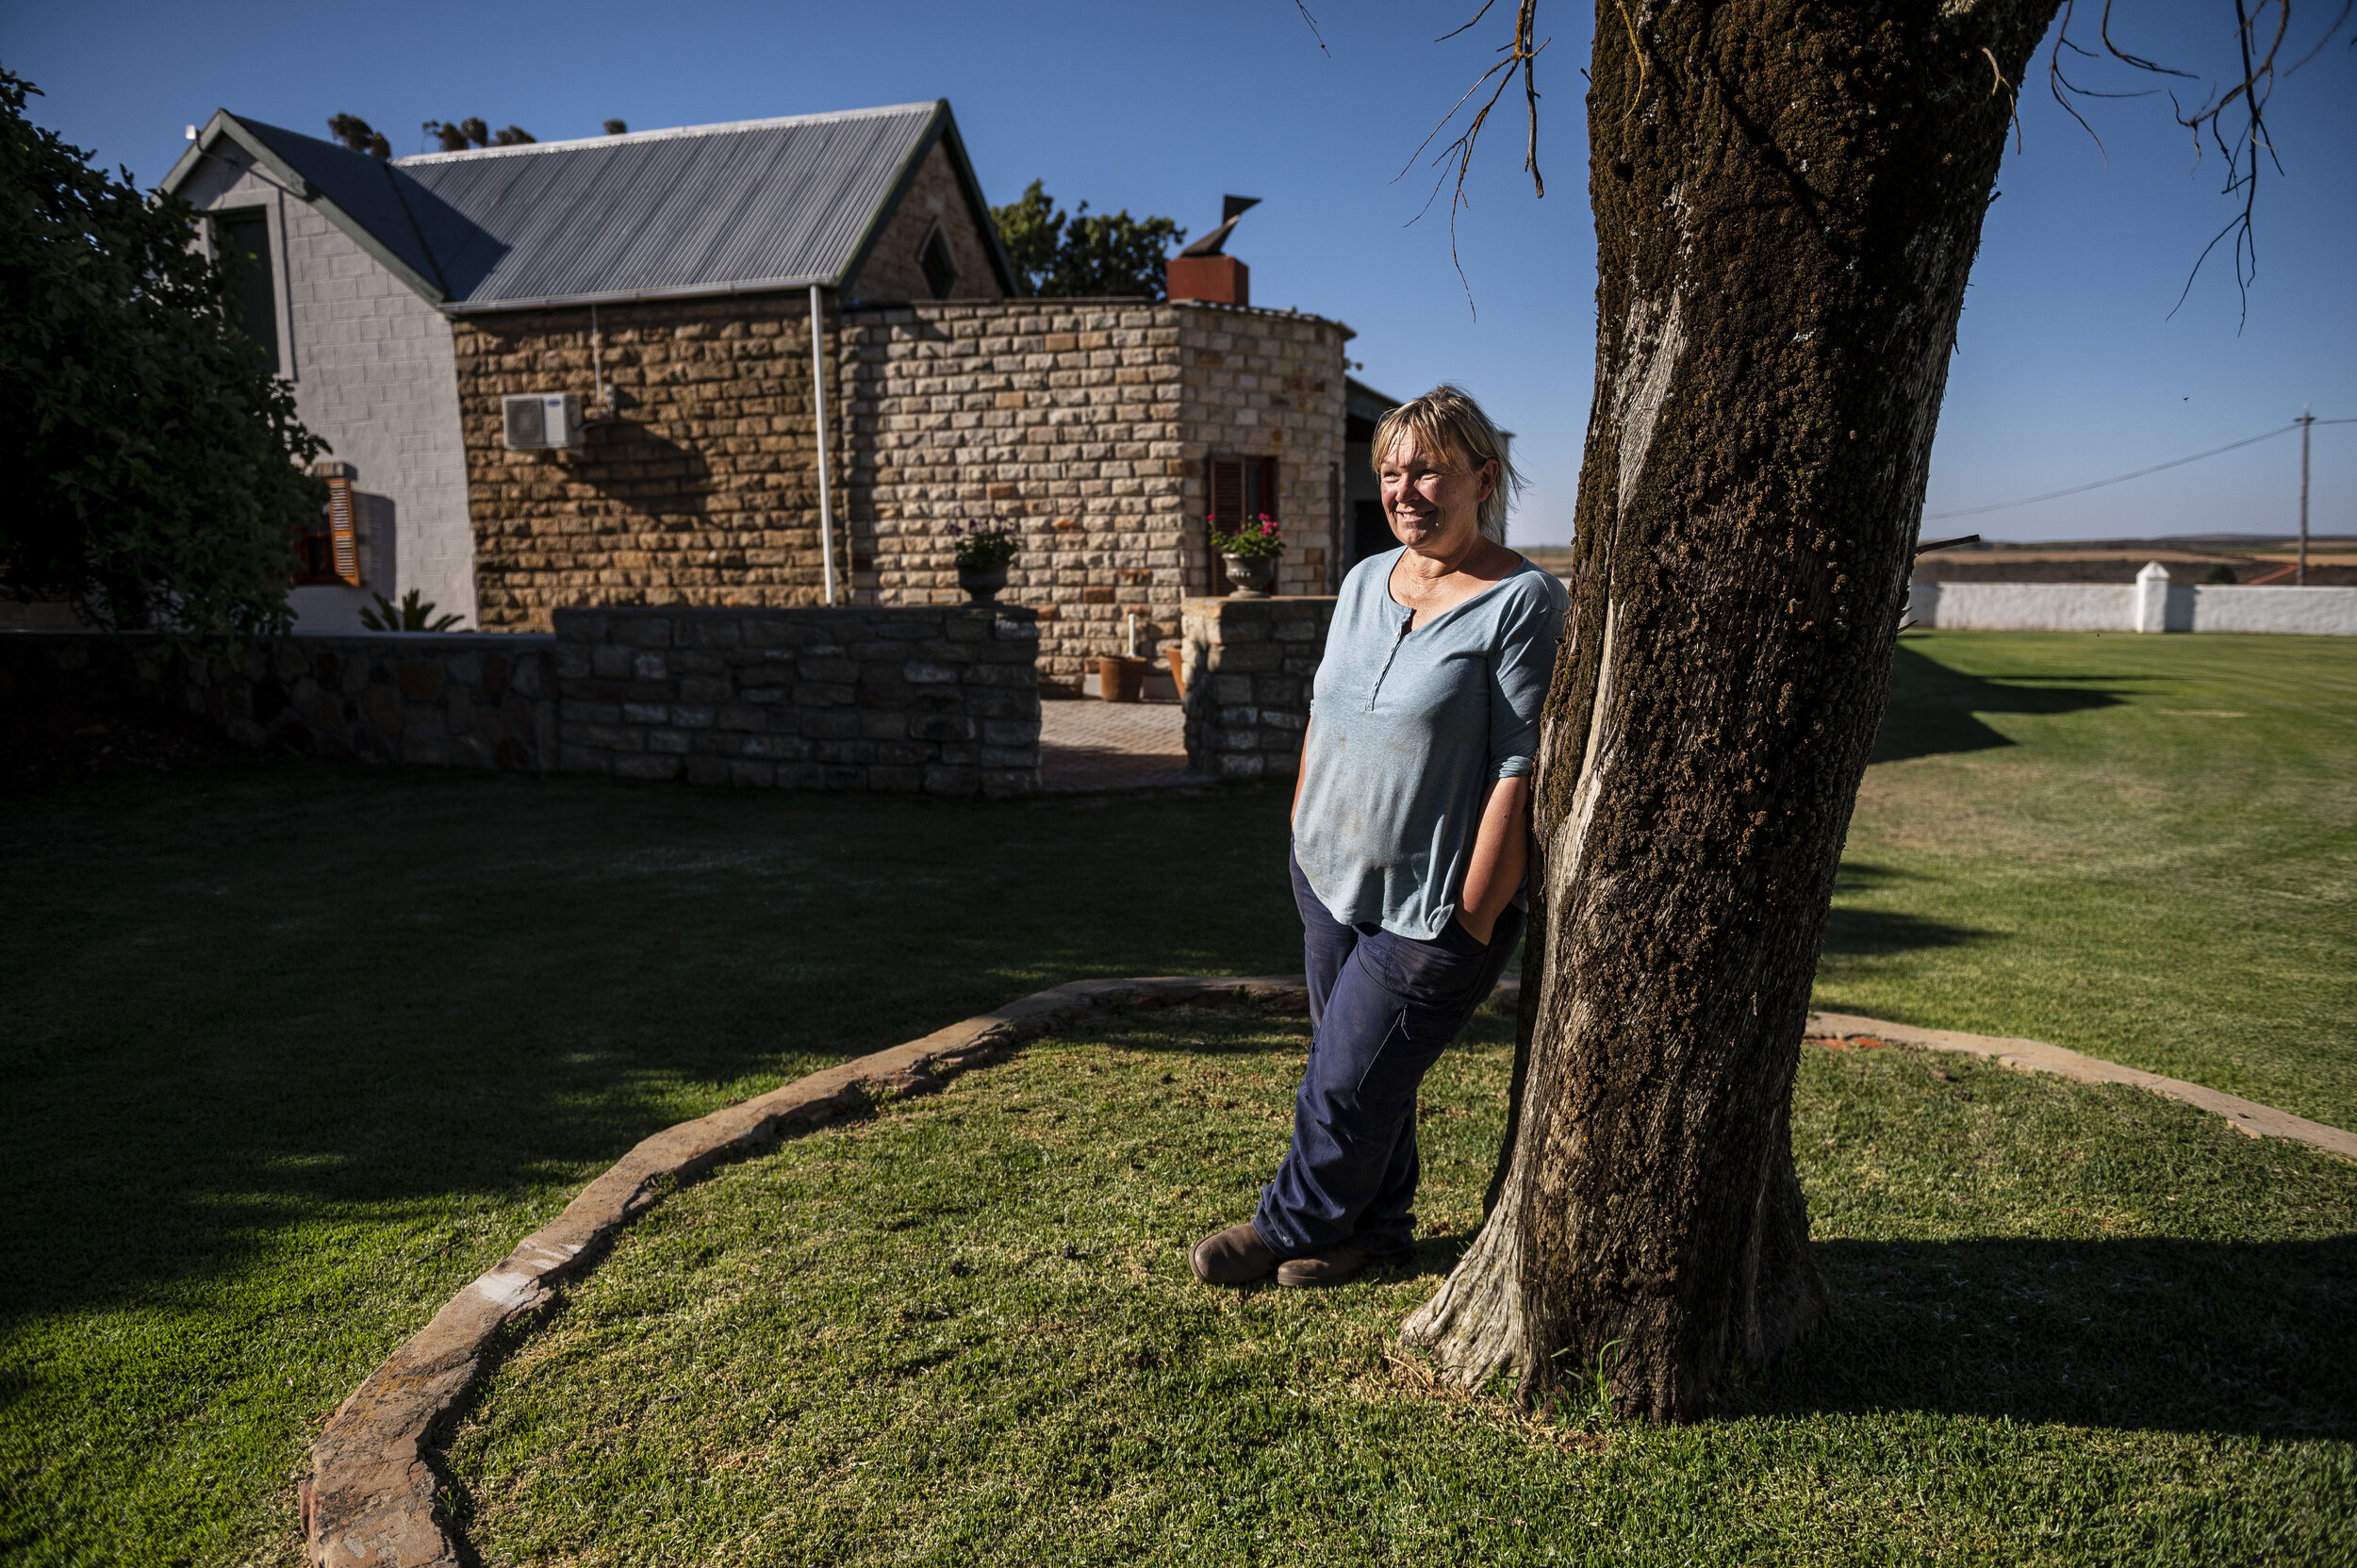  Mari Roussow steht auf auf dem grünen Rasen ihres Hauses. 2012 kauft sie zusammen mit ihrem Mann das Land, um darauf Rooibos anzubauen.   